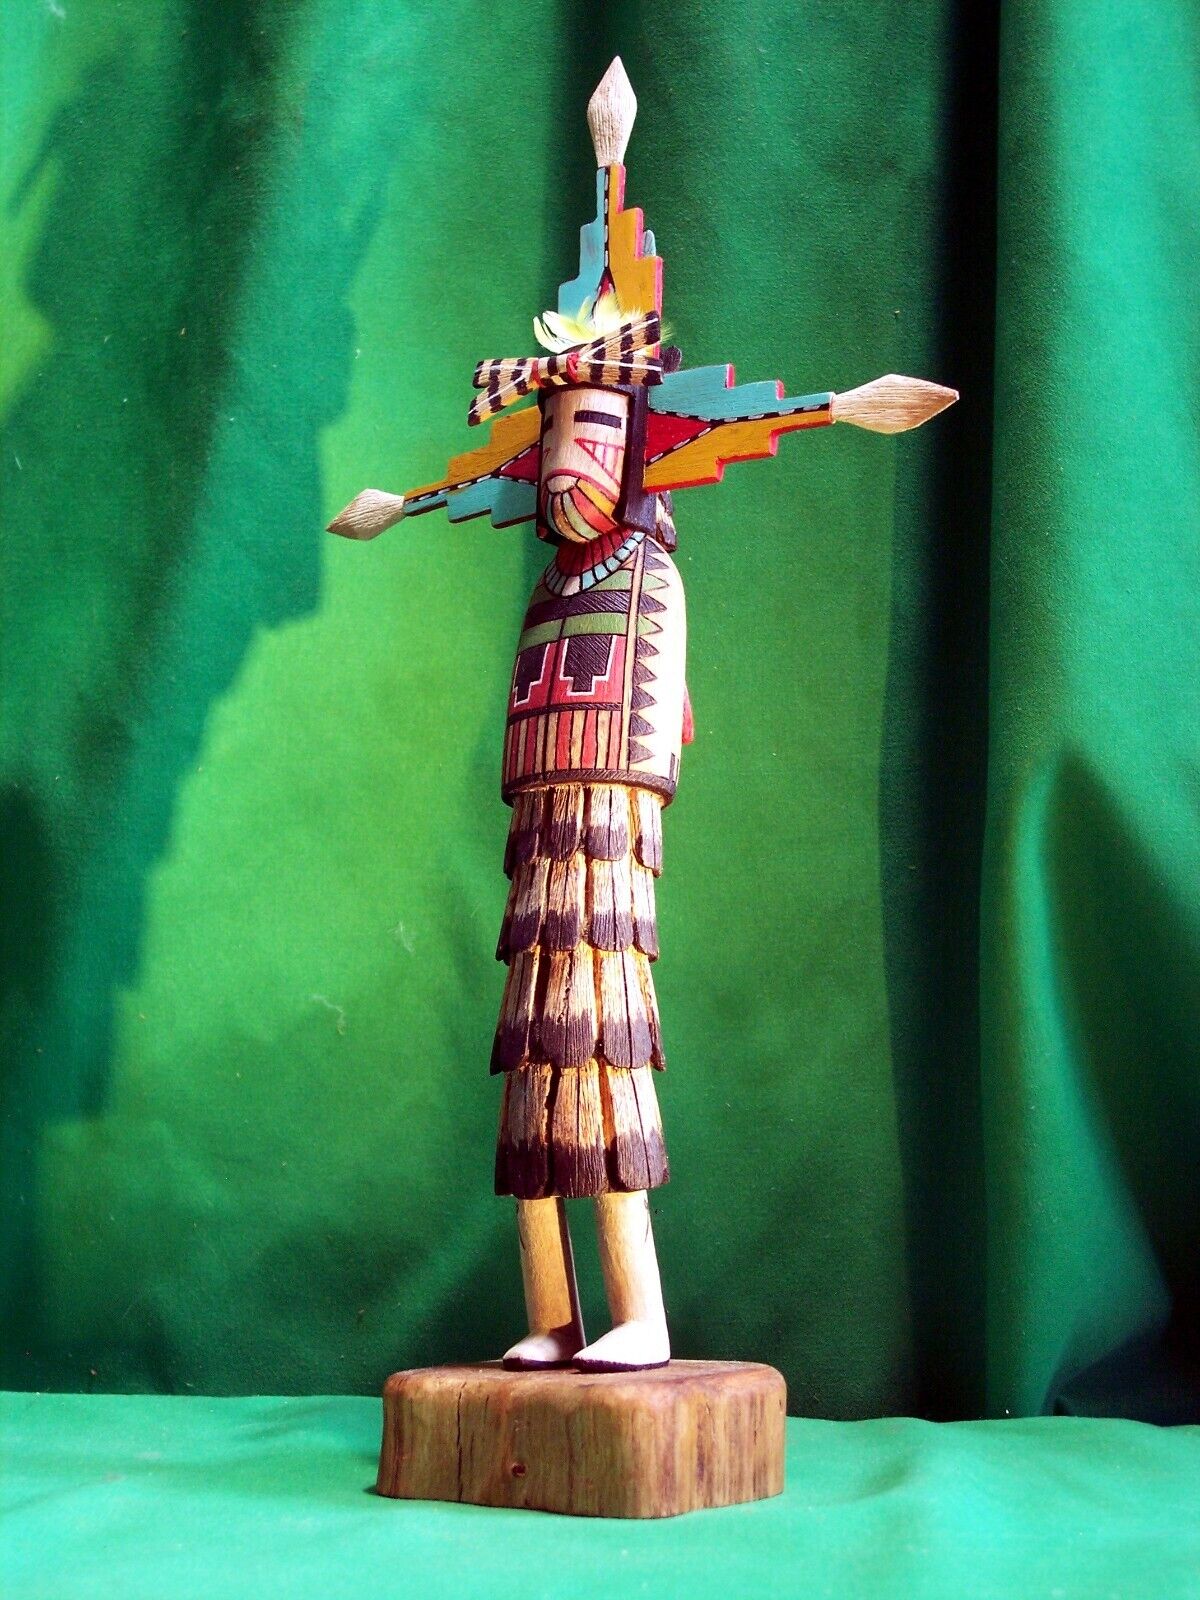 Hopi Kachina Doll - The Salako Mana Kachina by Martin Dallas - Beautiful